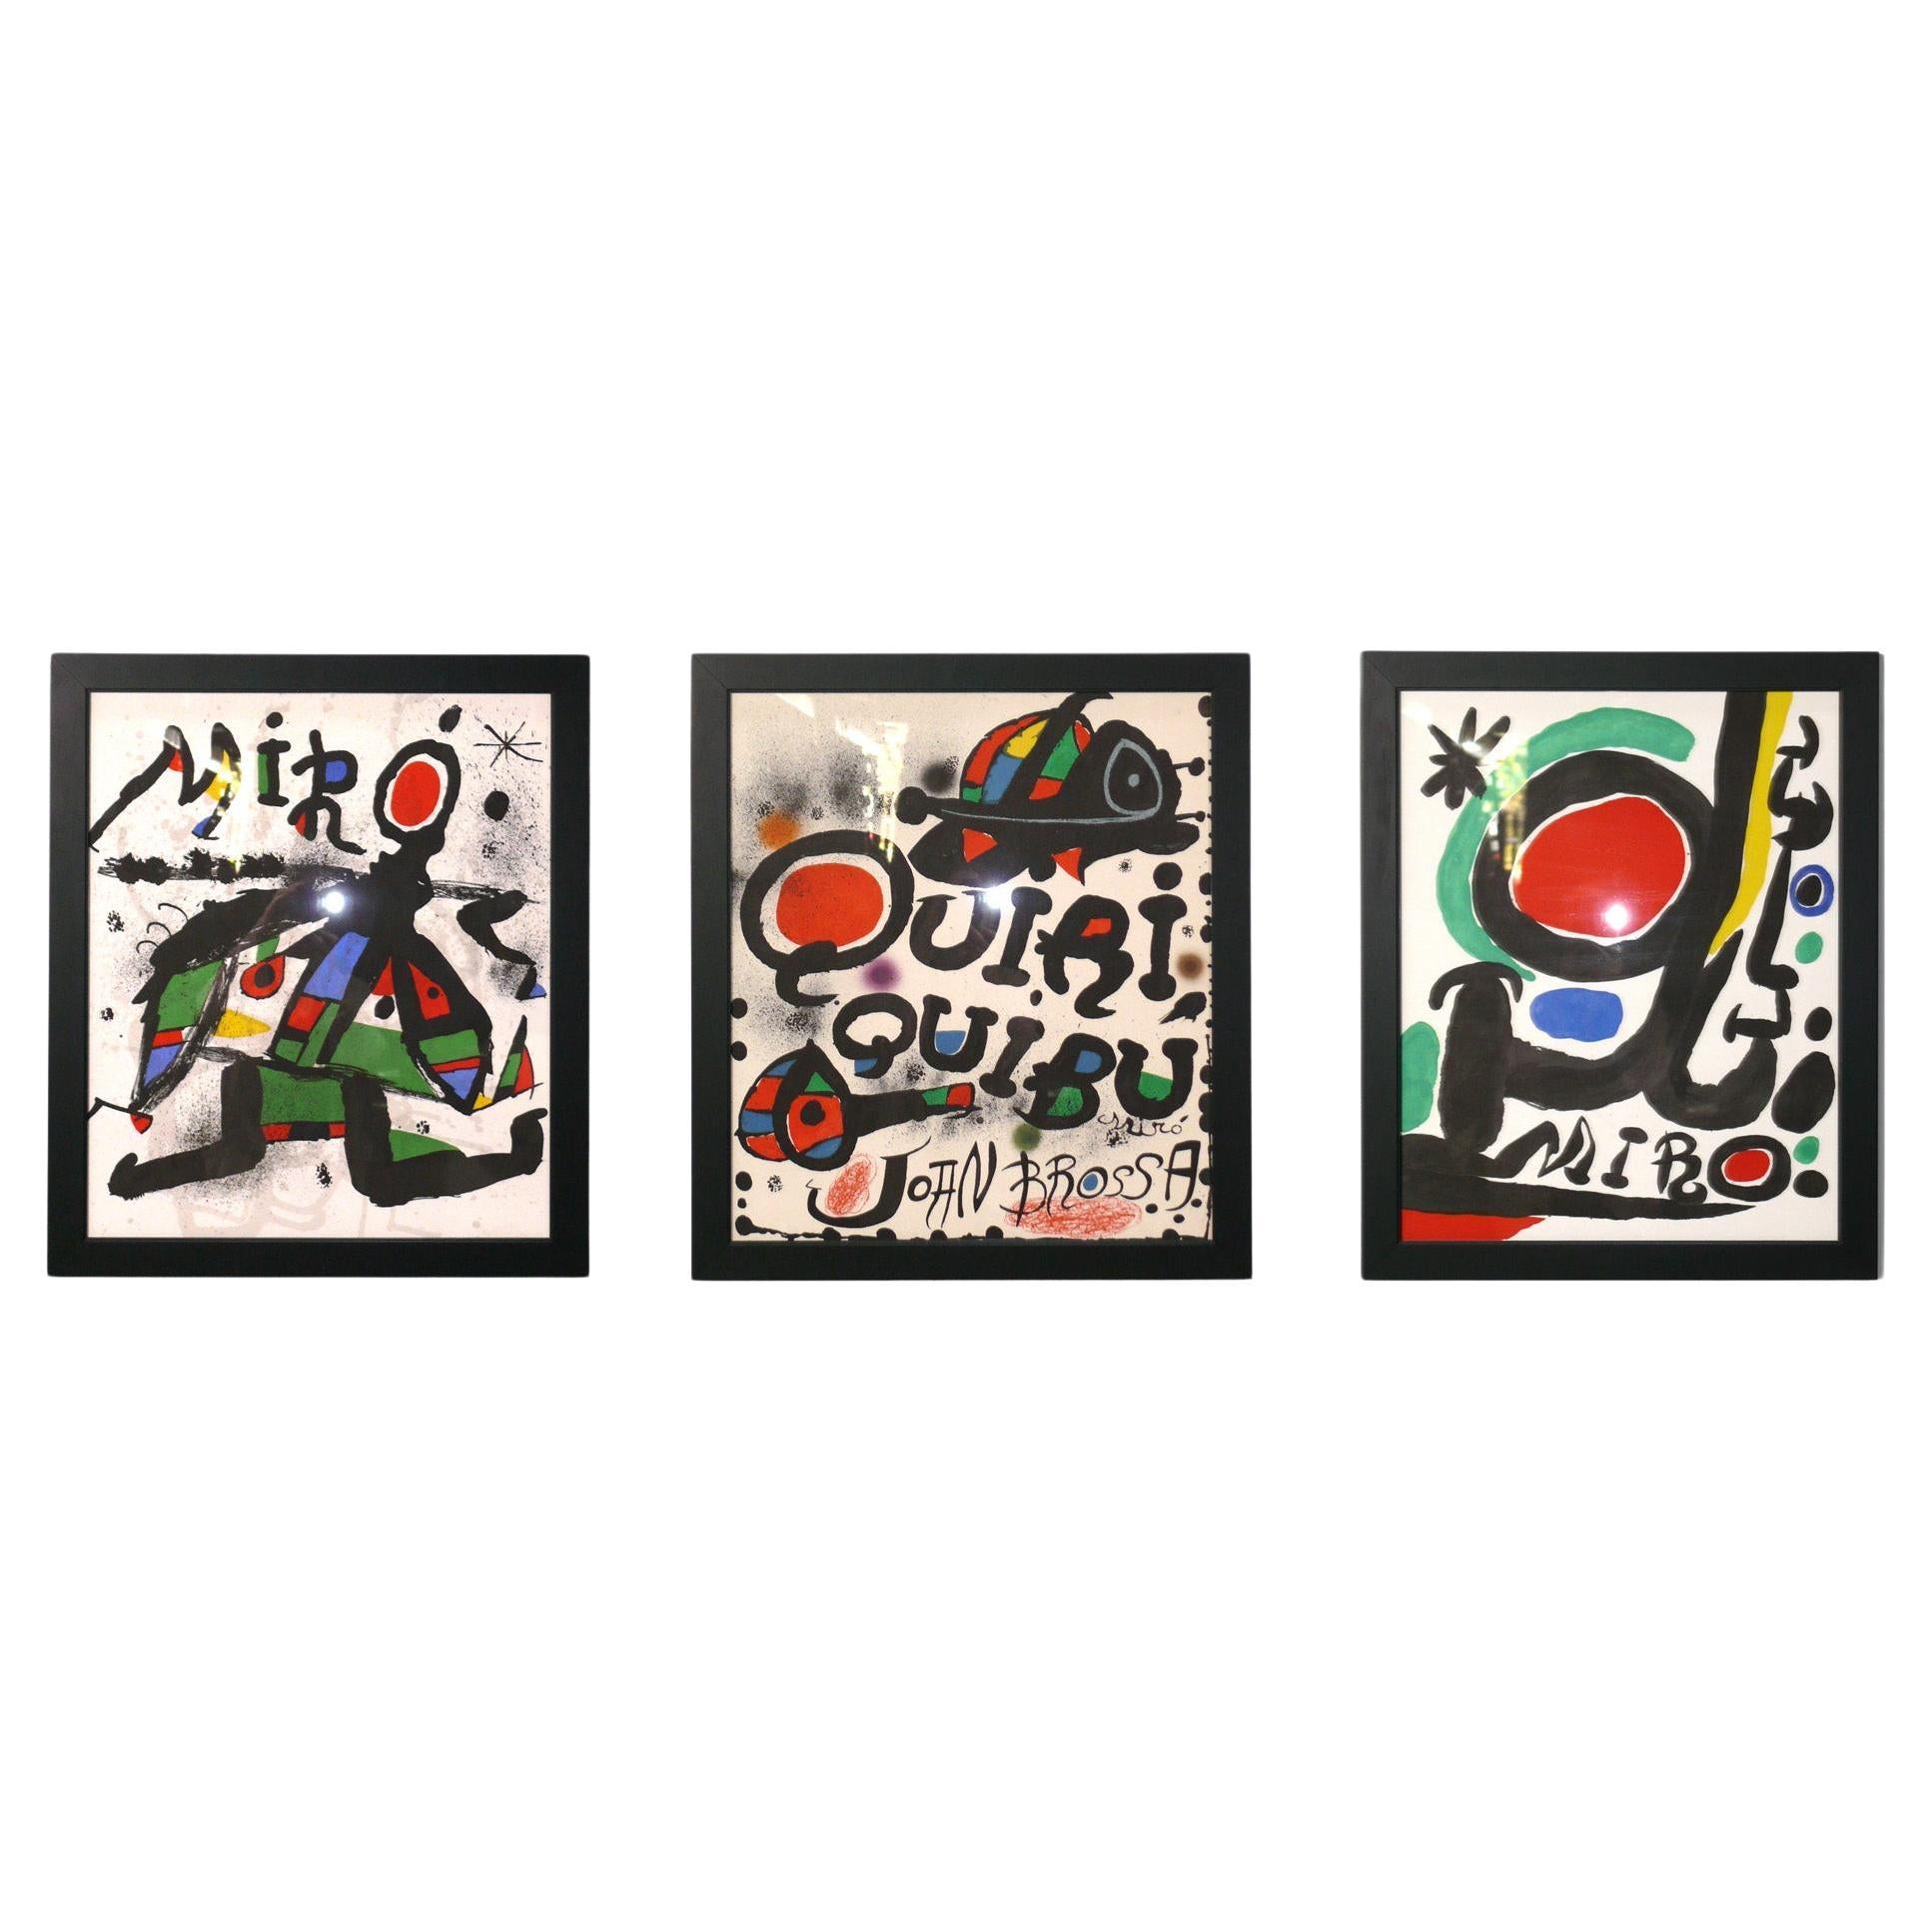 Serigrafías a gran escala de Joan Miró en colores vibrantes